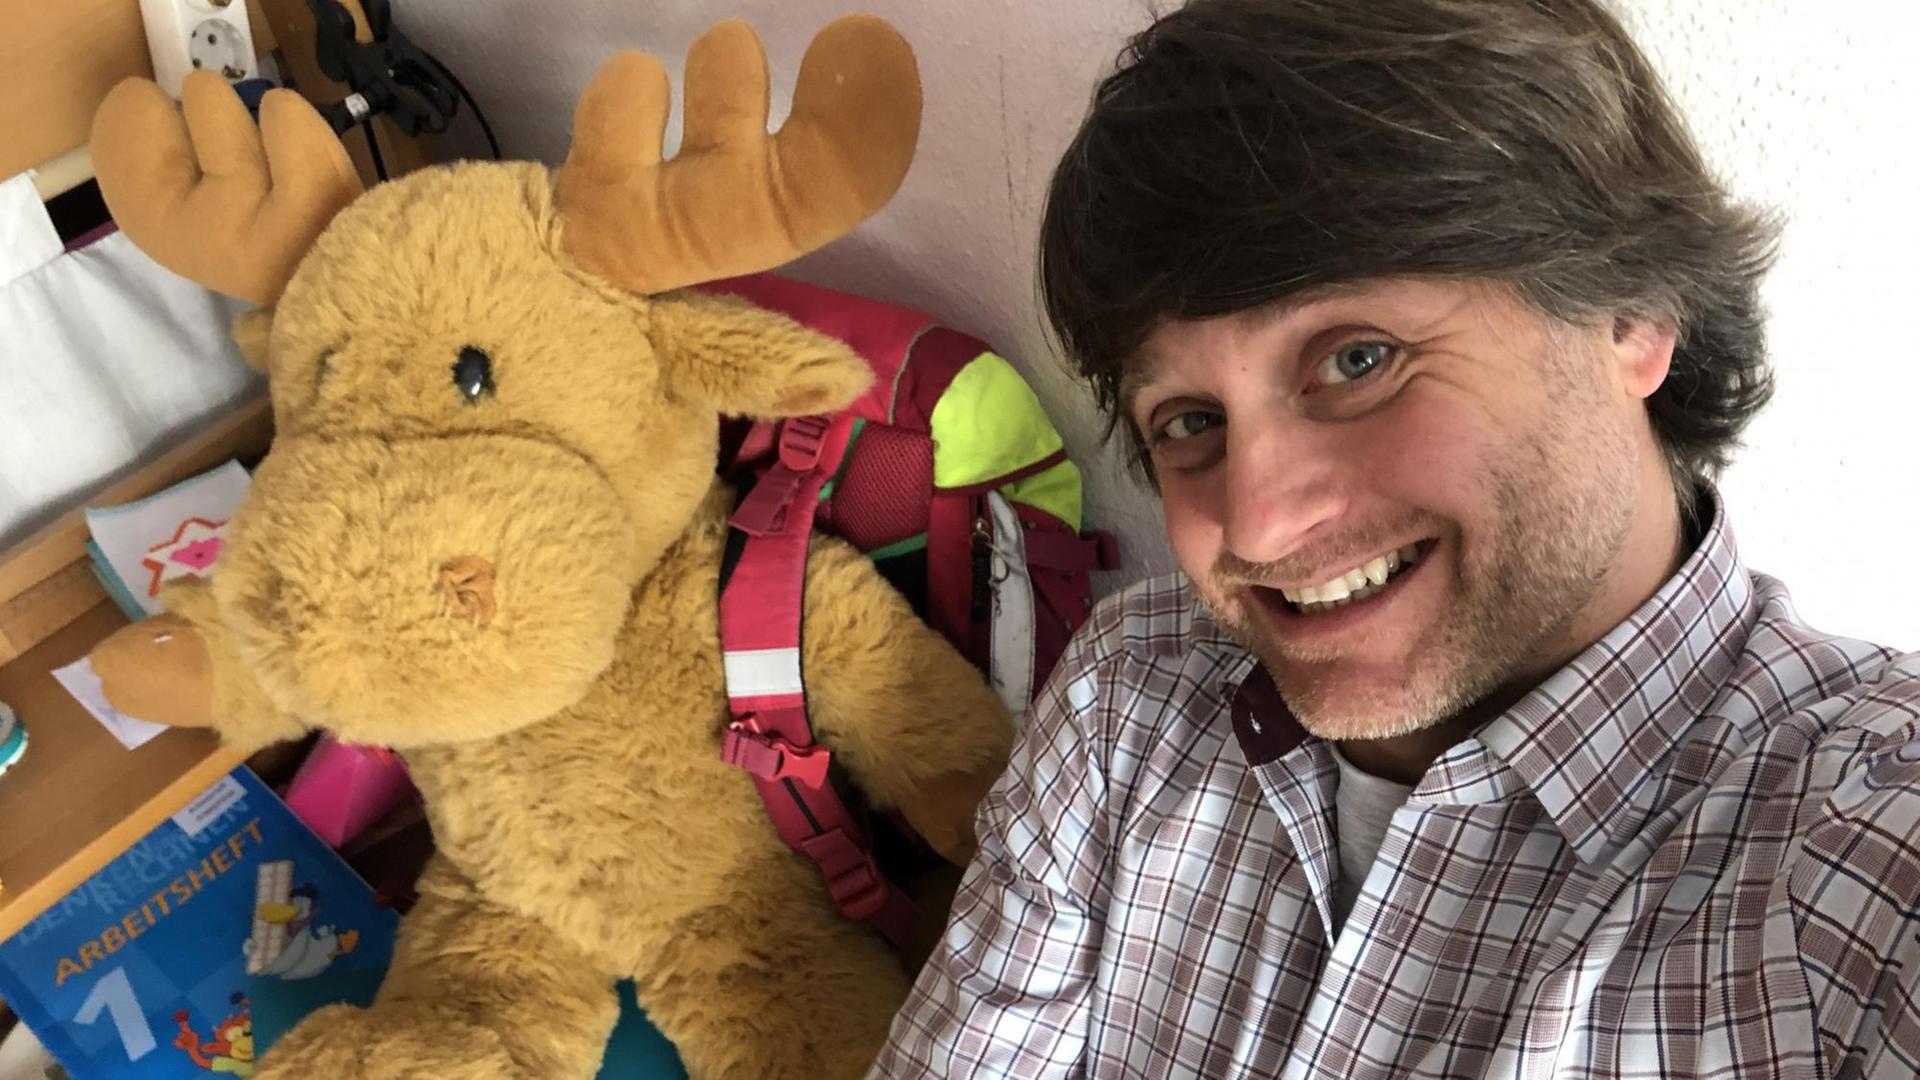 Deutschlandradio-Korrespondent Michael Watzke im Kinderzimmer. Neben ihm sitzt ein Plüschelch.